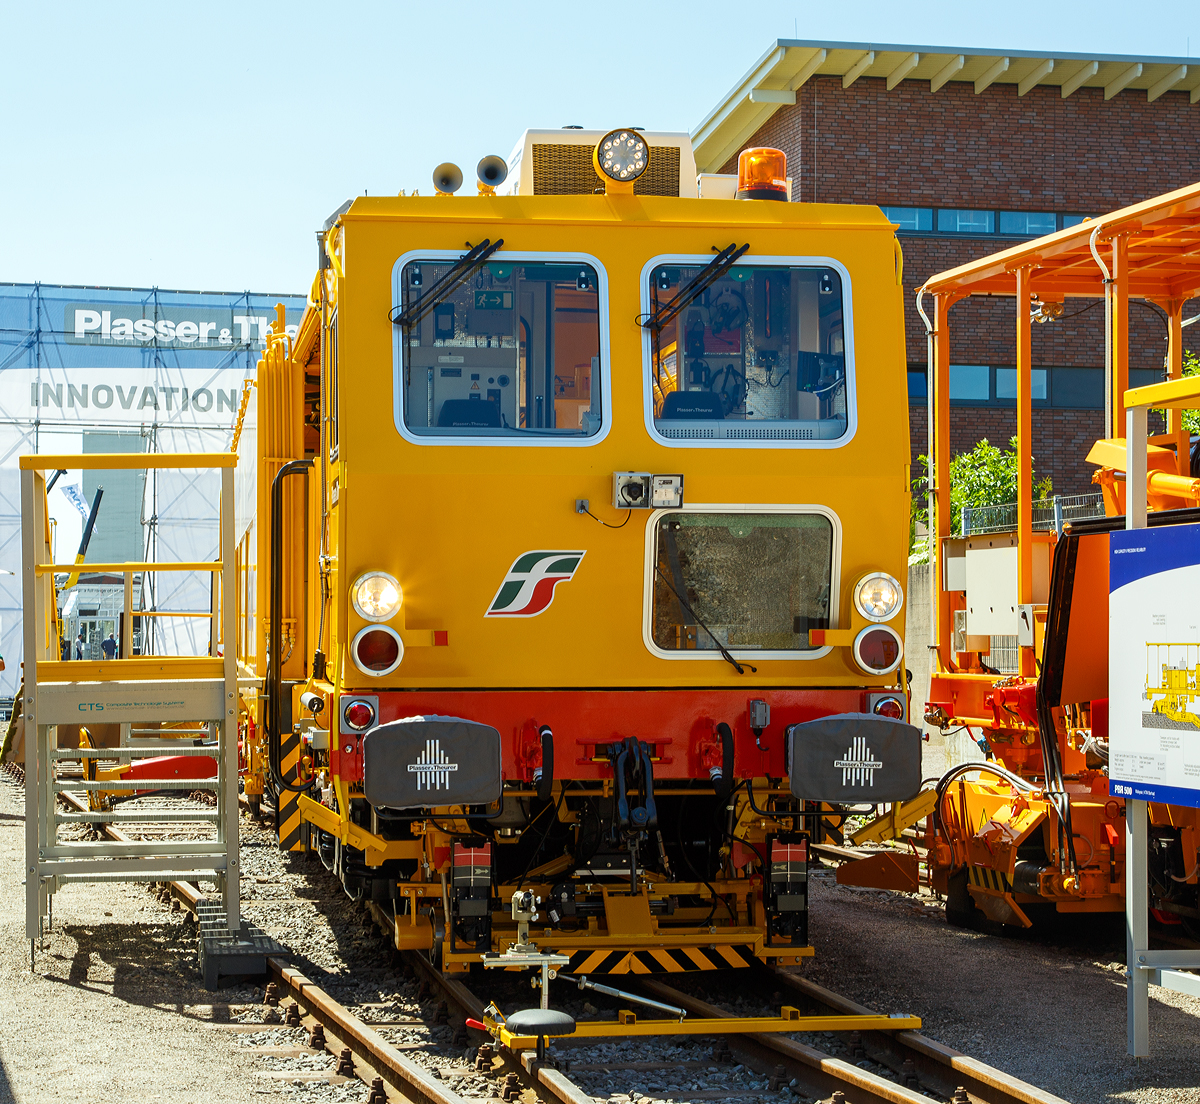 
Mit dieser UNIMAT COMBI 08–275 hat Plasser & Theurer (Linz) nun 16.000 Gleisbaumaschinen ausgeliefert, sie wurde auf der iaf in Münster präsentiert (am 01.06.2017) und an die Rete Ferroviaria Italiana (RFI), Gruppo Ferrovie dello Stato Italiane (zur Gruppe der Italienische Staatsbahnen) übergeben. Dieser UNIMAT COMBI 08–275 hat die UIC-Nummer IT-RFI 99 83 9422 046-6 und wurde 2017 von Plasser & Theurer  in Linz gebaut.

Der Unimat Combi 08-275 wurde zur Sofortbehebung von Gleislagefehlern entwickelt. Neben dem Universalstopfaggregat verfügt die Maschine über Einrichtungen zum Pflügen, Kehren und Aufzeichnen der Gleisgeometrie. Sie ist äußerst universell einsetzbar auf Gleisen und Weichen.

Die italienische Bahn wird mit einer ganzen Serie dieser Multifunktionsmaschinen ausgestattet. Der erste Unimat Combi 08-275 ging 2010 an Rete Ferroviaria Italiana (RFI) in Bologna. Bis 2018 sind es insgesamt 13 gelieferte Unimat Combi 08-275. Der Einsatz identer Technologie unterstützt maßgeblich die Einhaltung von Standards hinsichtlich der Bearbeitungsqualität. Wie bei vielen Bahnverwaltungen setzt auch Italien in den lokalen Verantwortungsbereichen gleiche Instandhaltungsmaschinen ein.

Das gesamte Hochgeschwindigkeits-Streckennetz der italienischen Bahnverwaltung RFI umfasst bereits rund 1.000 km. Bei der Wahl der passenden Serienmaschine wurde darauf Wert gelegt, dass sie universell einsetzbar ist für kurzfristige Arbeiten auf Gleisen und Weichen. Das „Universalwerkzeug“ Unimat Combi 08-275 vereint folgende Technologien: Stopfmaschine für Gleise und Weichen, integrierter Schotterpflug und Kehrbürste, vollwertiges inertiales Gleisgeometrie-Messsystem.

Die Maschinen werden auf alle Bauhöfe der RFI verteilt und zur Einzelfehlerbehebung sowohl auf Hochgeschwindigkeitsstrecken als auch auf normalen Strecken eingesetzt. Mit einem Messfahrzeug werden im Vorfeld Einzelfehler detektiert. Das GPS-unterstützte inertiale Gleisgeometrie-Messsystem am Unimat Combi 08-275 findet die Gleisfehler schnell und punktgenau. Nach der Fehlerbehebung – dem Stopfen, Pflügen und Kehren – wird nachgemessen. Damit erreicht man eine verbesserte Auslastung der Universalstopfmaschine. Der Unimat Combi 08-275 kann auch als Messwagen eingesetzt werden. Die mitgelieferte Software analysiert die Messdaten gemäß den aktuellen Richtlinien von RFI.

Dreimal wöchentlich werden in vier- bis fünfstündigen Nachteinsätzen jeweils etwa 1.000 m Gleis und ein bis zwei Weichen gestopft, gepflügt und gekehrt.

Die Entscheidung für einen Serienmaschinentyp bringt eine Reihe von Vorteilen. Die Zulassungskonformität beschleunigt den Prozess. Ist eine Maschinentype bereits im Bestimmungsland zugelassen, geht eine neue Maschine derselben Type deutlich schneller in Betrieb. Standards im Maschinenpark vereinfachen auch die Wartung. Der Umfang der Ersatzteilbevorratung kann reduziert werden, wenn mehrere baugleiche Maschinen eingesetzt werden. Auch das Training und die Schulung der Bedienmannschaften wird durch Serienmaschinen erleichtert. 

TECHNISCHE DATEN:
Spurweite: 1.435 mm (Normalspur)
Anzahl der Achsen: 5 
Länge über Puffer:  31.140 mm
Eigengewicht: 94.000 kg
Zul. Anhängelast: 60 t
Zur Mitfahrt zugel. Personenzahl: 6
Kleister befahrbarer Gleisbogen: R = 120 m 
Höchstgeschwindigkeit: 100 km/h (Eigen und Geschleppt)